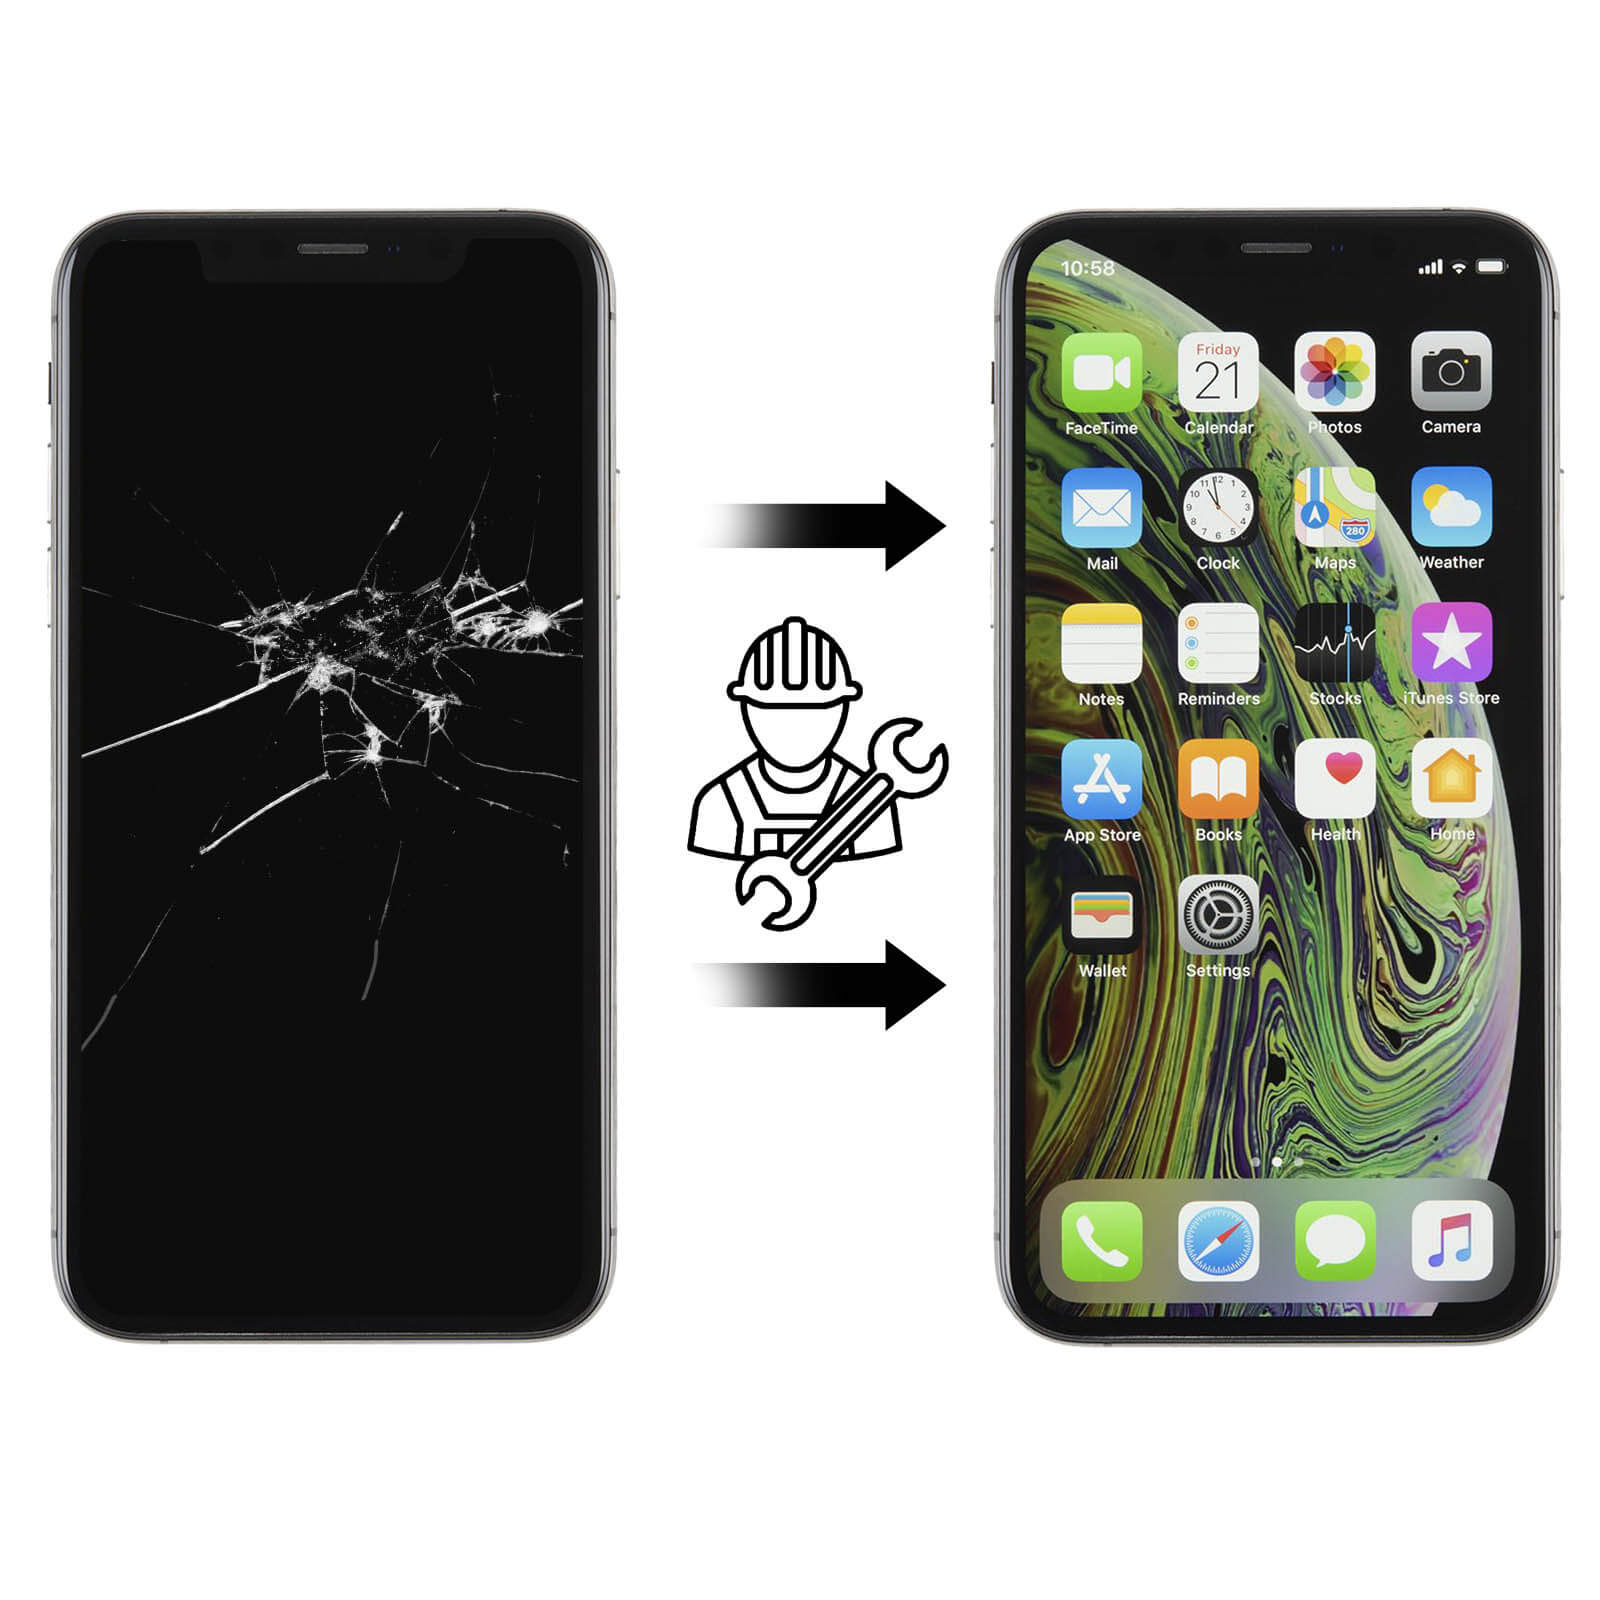 Ecran iPhone 11 Noir - Bloc LCD + vitre tactile